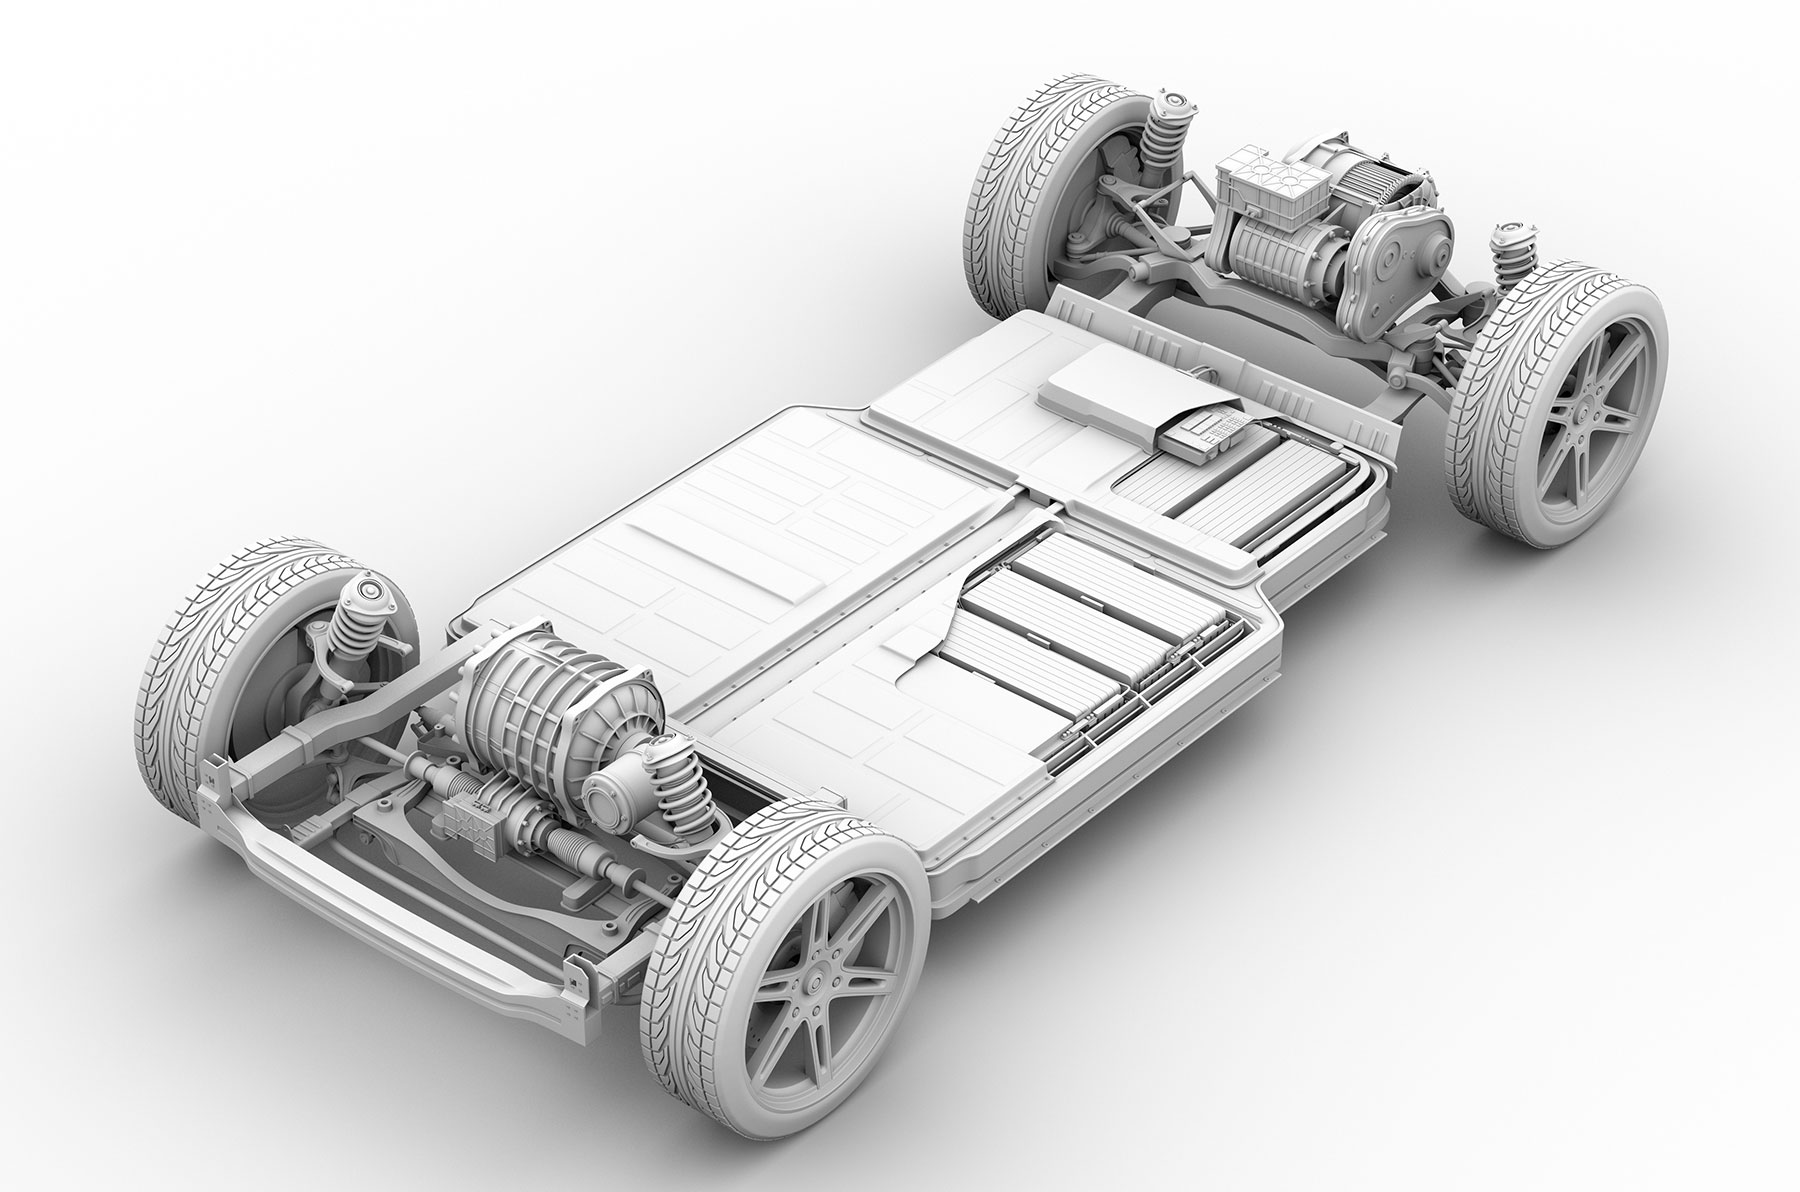 Dienstag Magazin: Macht zu häufiges Superchargen die Batterie kaputt?  Green NCAP Tesla Model 3, NIO eT7 & Renault Mégane E-Tech: Effizienz sehr  gut! - e-engine - Alles rund um E-Mobilität